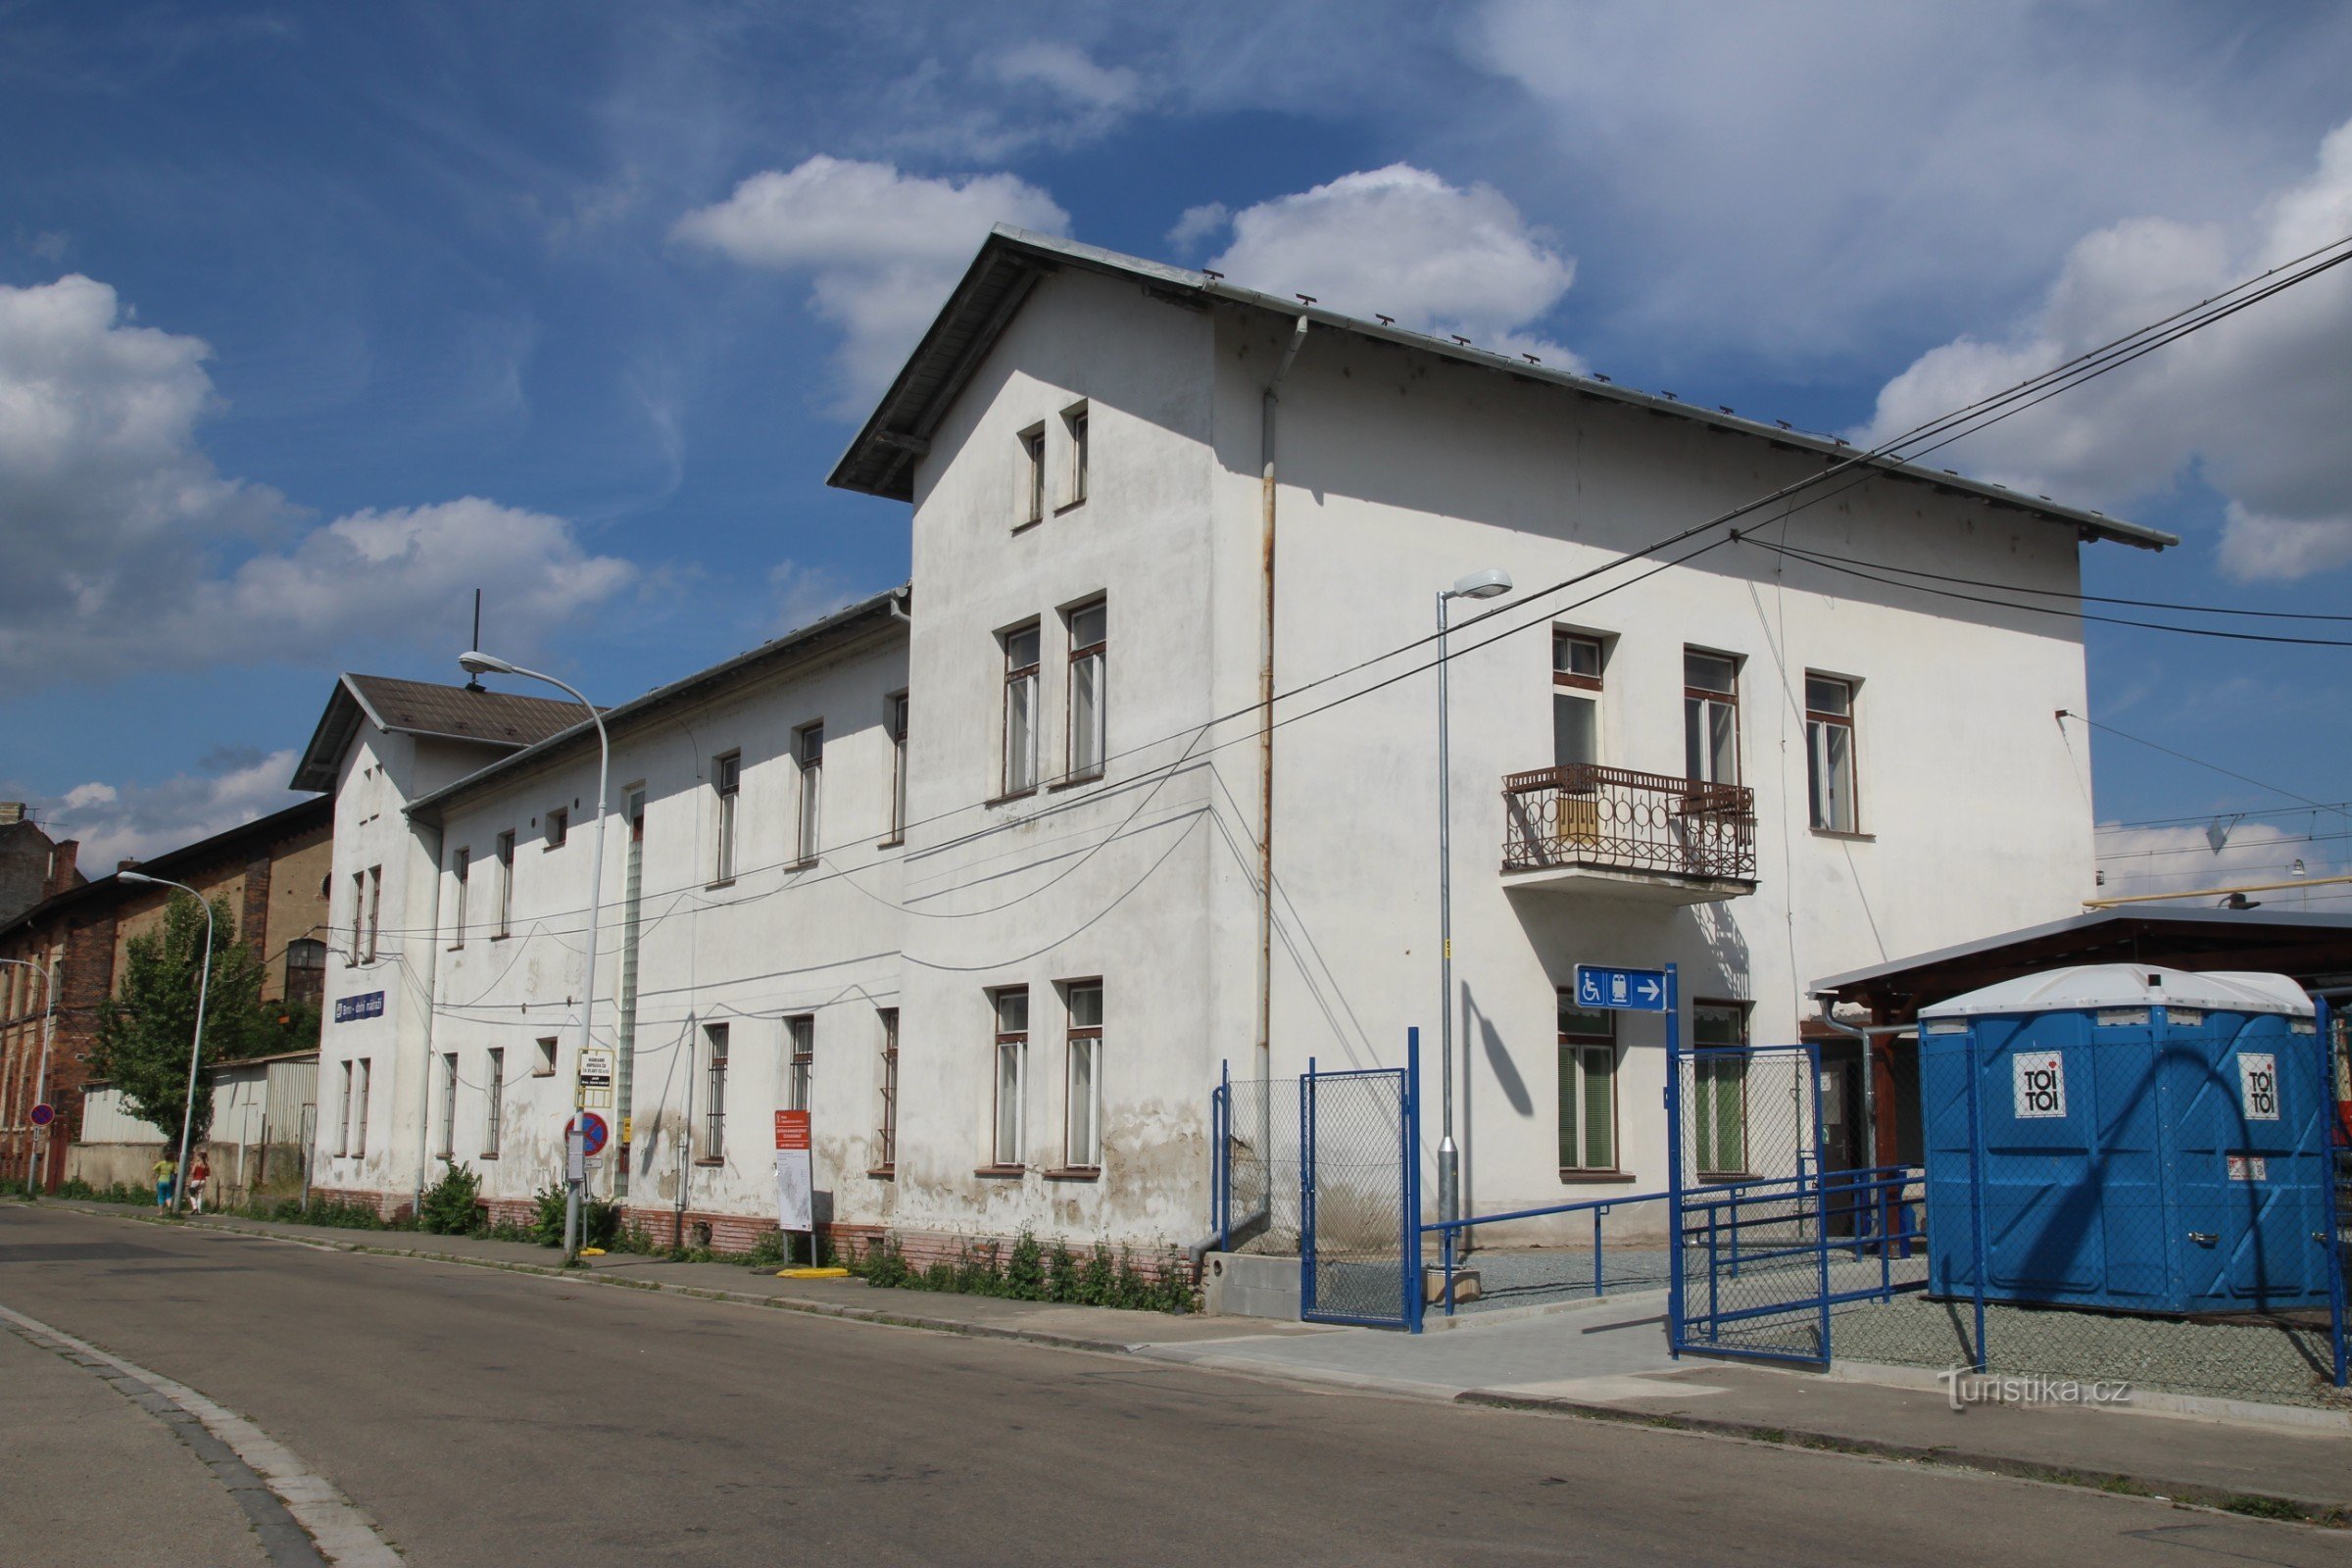 The Dolní nádraží office building